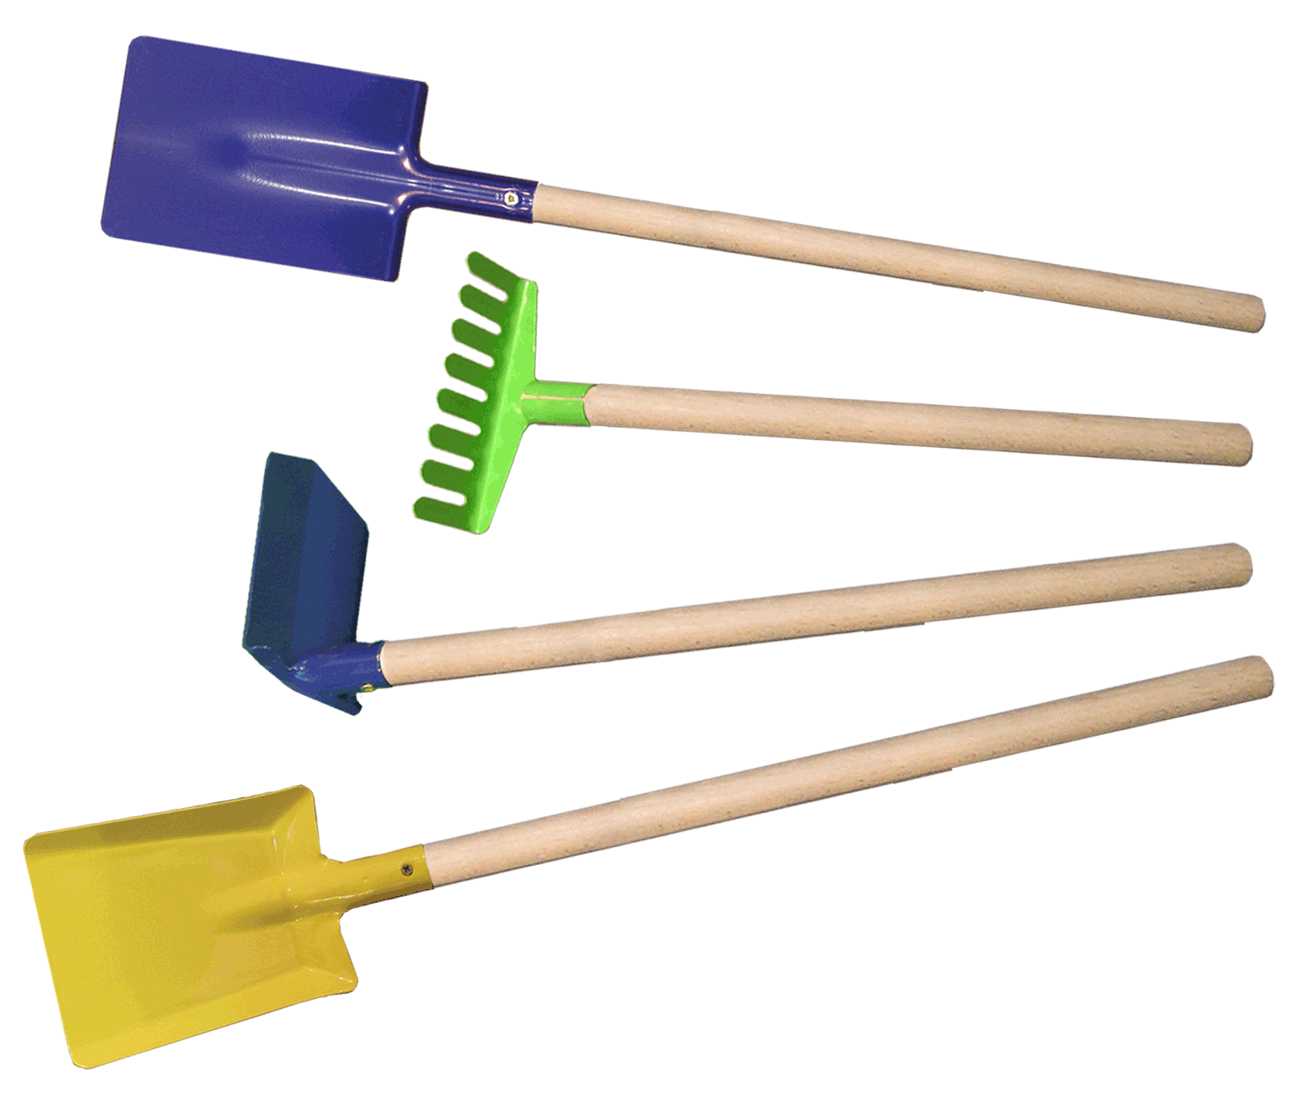 Children shovel, rake, spade, hoe